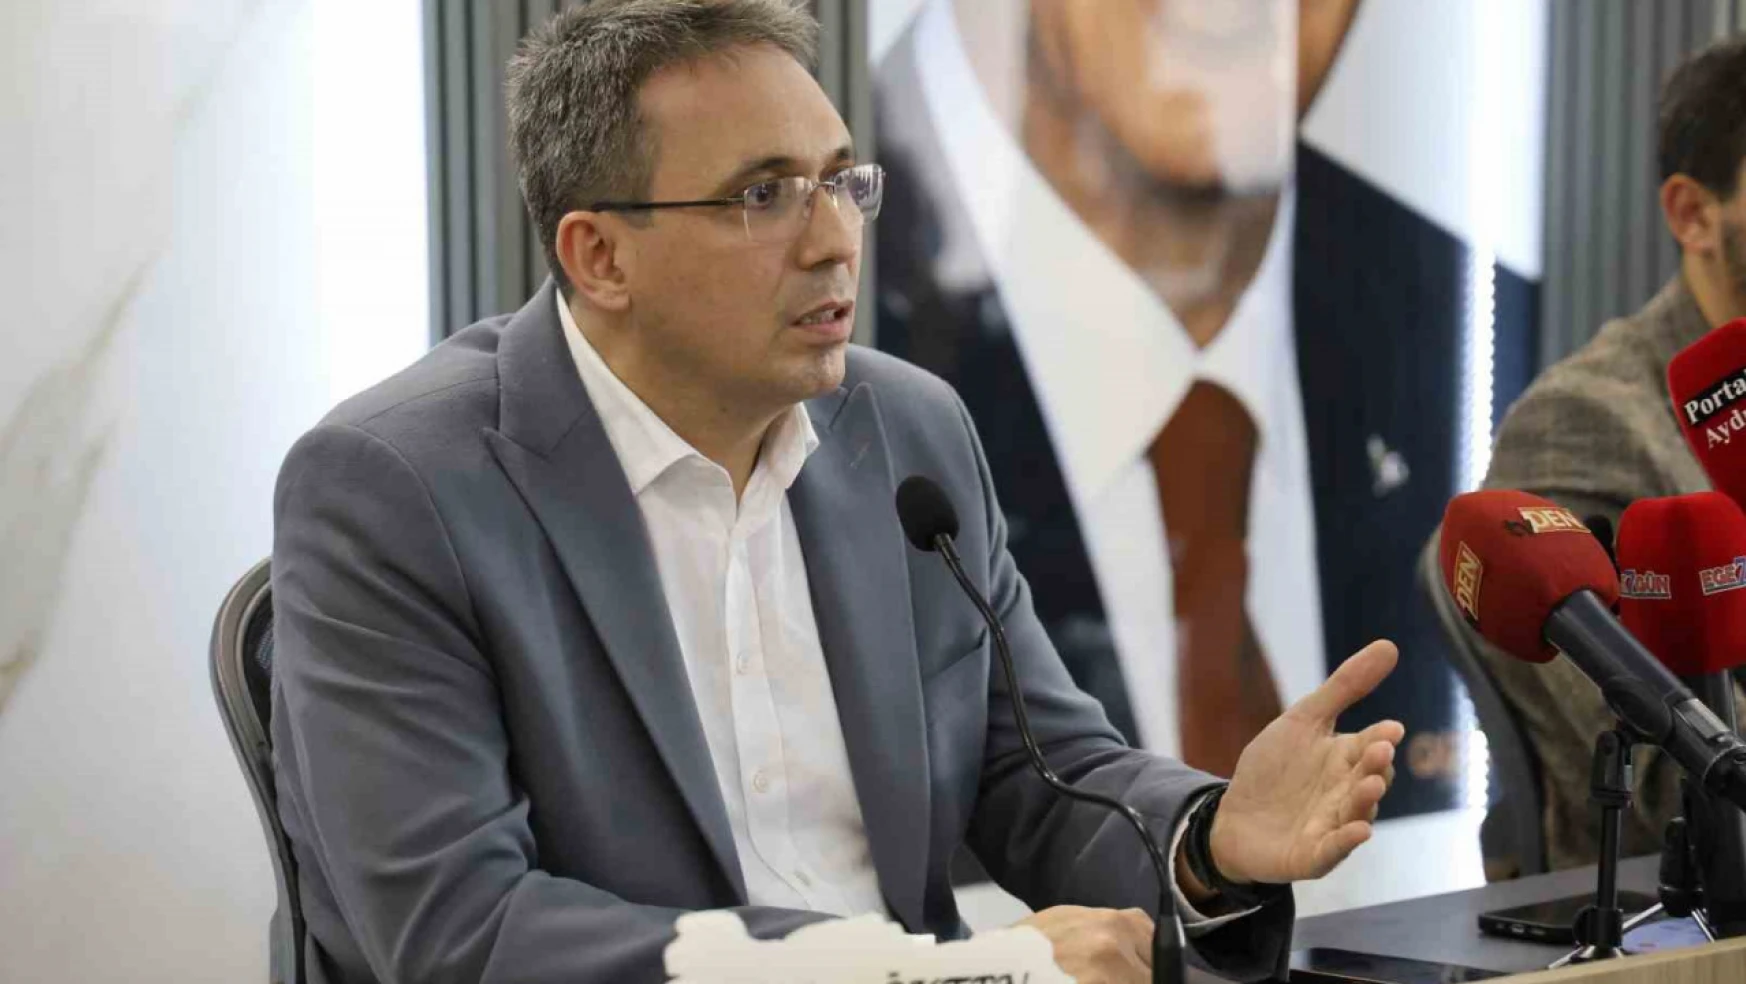 AK Parti İl Başkanı Ökten, istifa etmek gibi bir düşüncesi olmadığını açıkladı